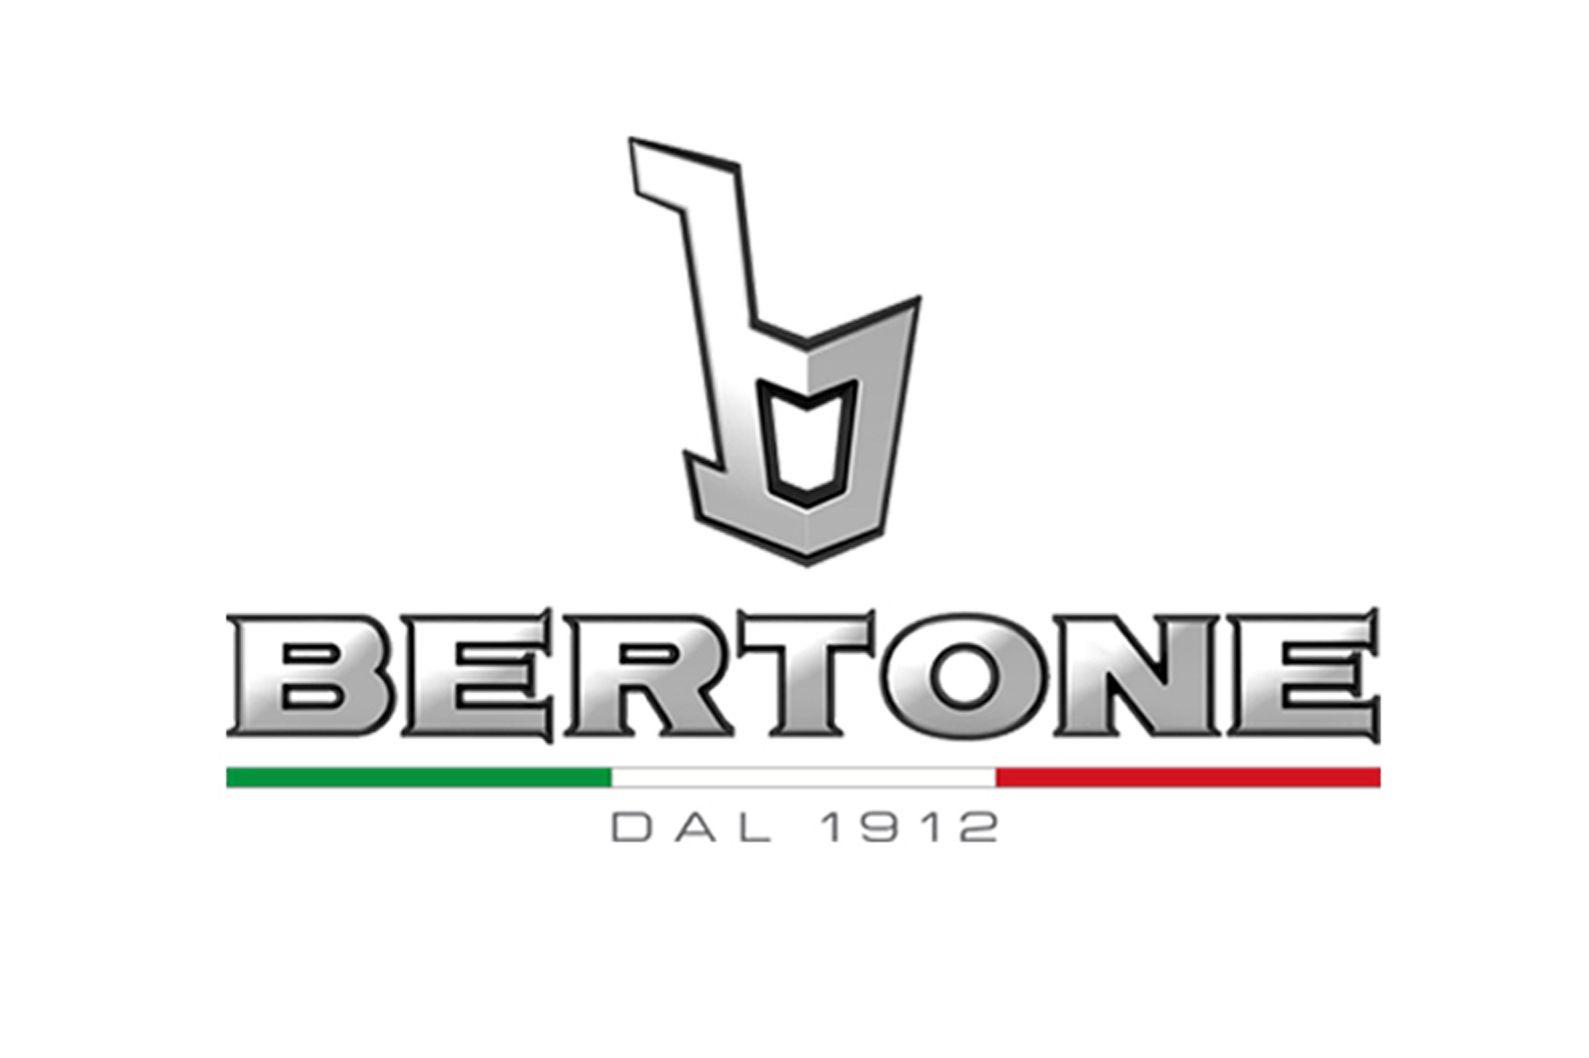 Bertone Car Logo - AutomotiveDesignClub International BERTONE NEEDS A REAL